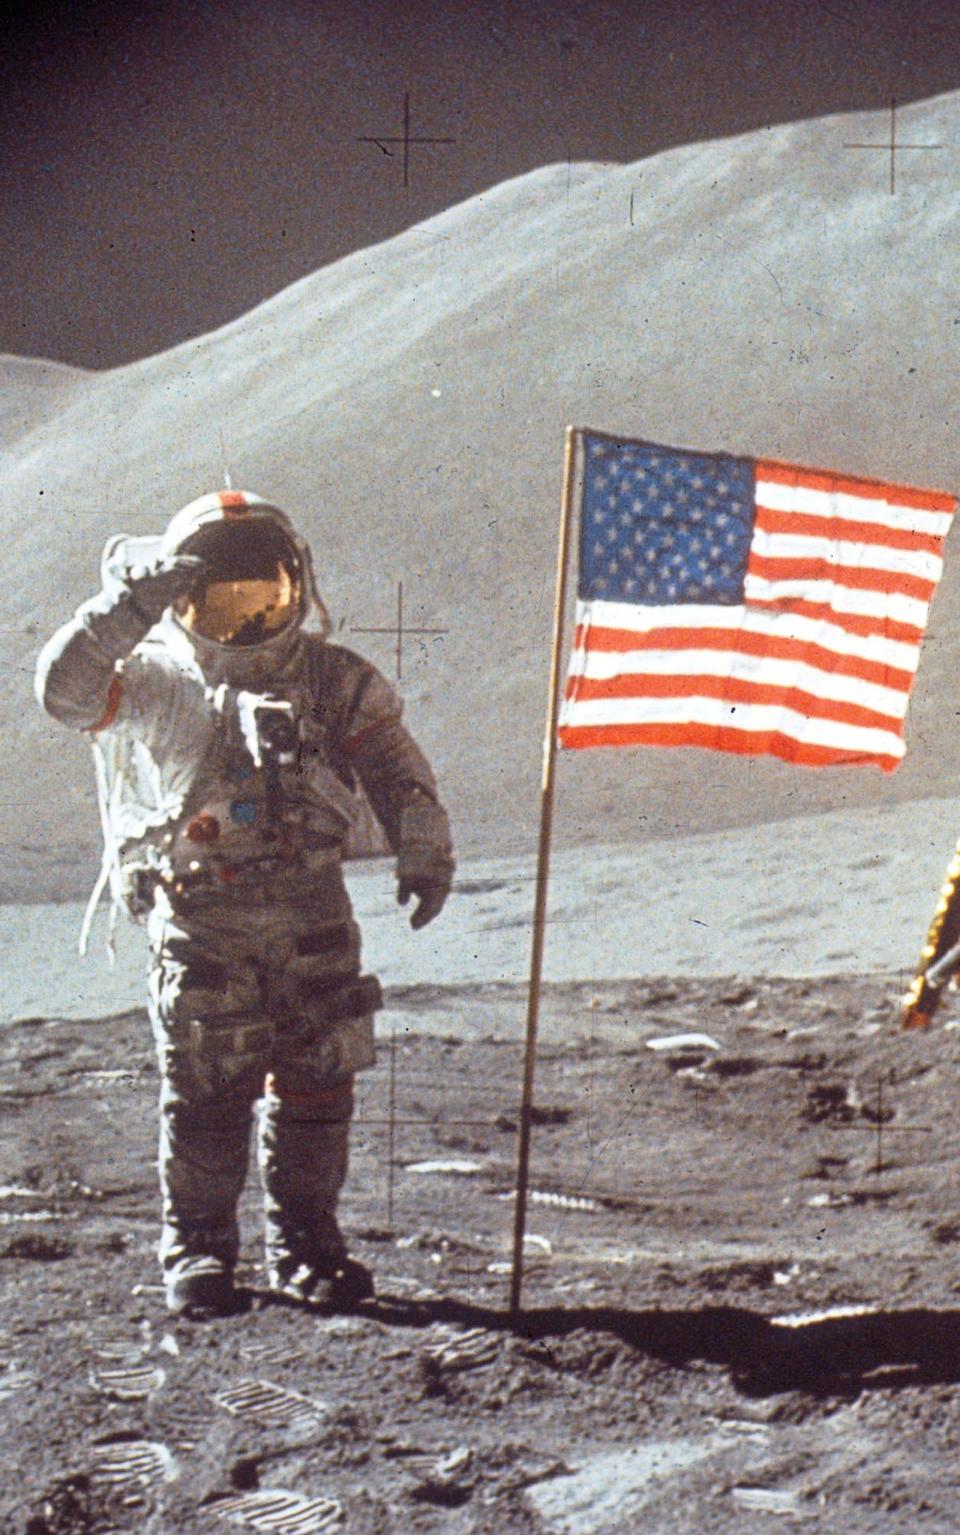 Wohl eine der bekanntesten Verschwörungstheorien: Die USA waren 1969 gar nicht auf dem Mond. Schließlich wehte die Fahne nicht im Mondwind und auch die Technik war schlechter als die eines Tamagotchis ... (Bild: Getty Images / NASA / Liaison / pixabay)